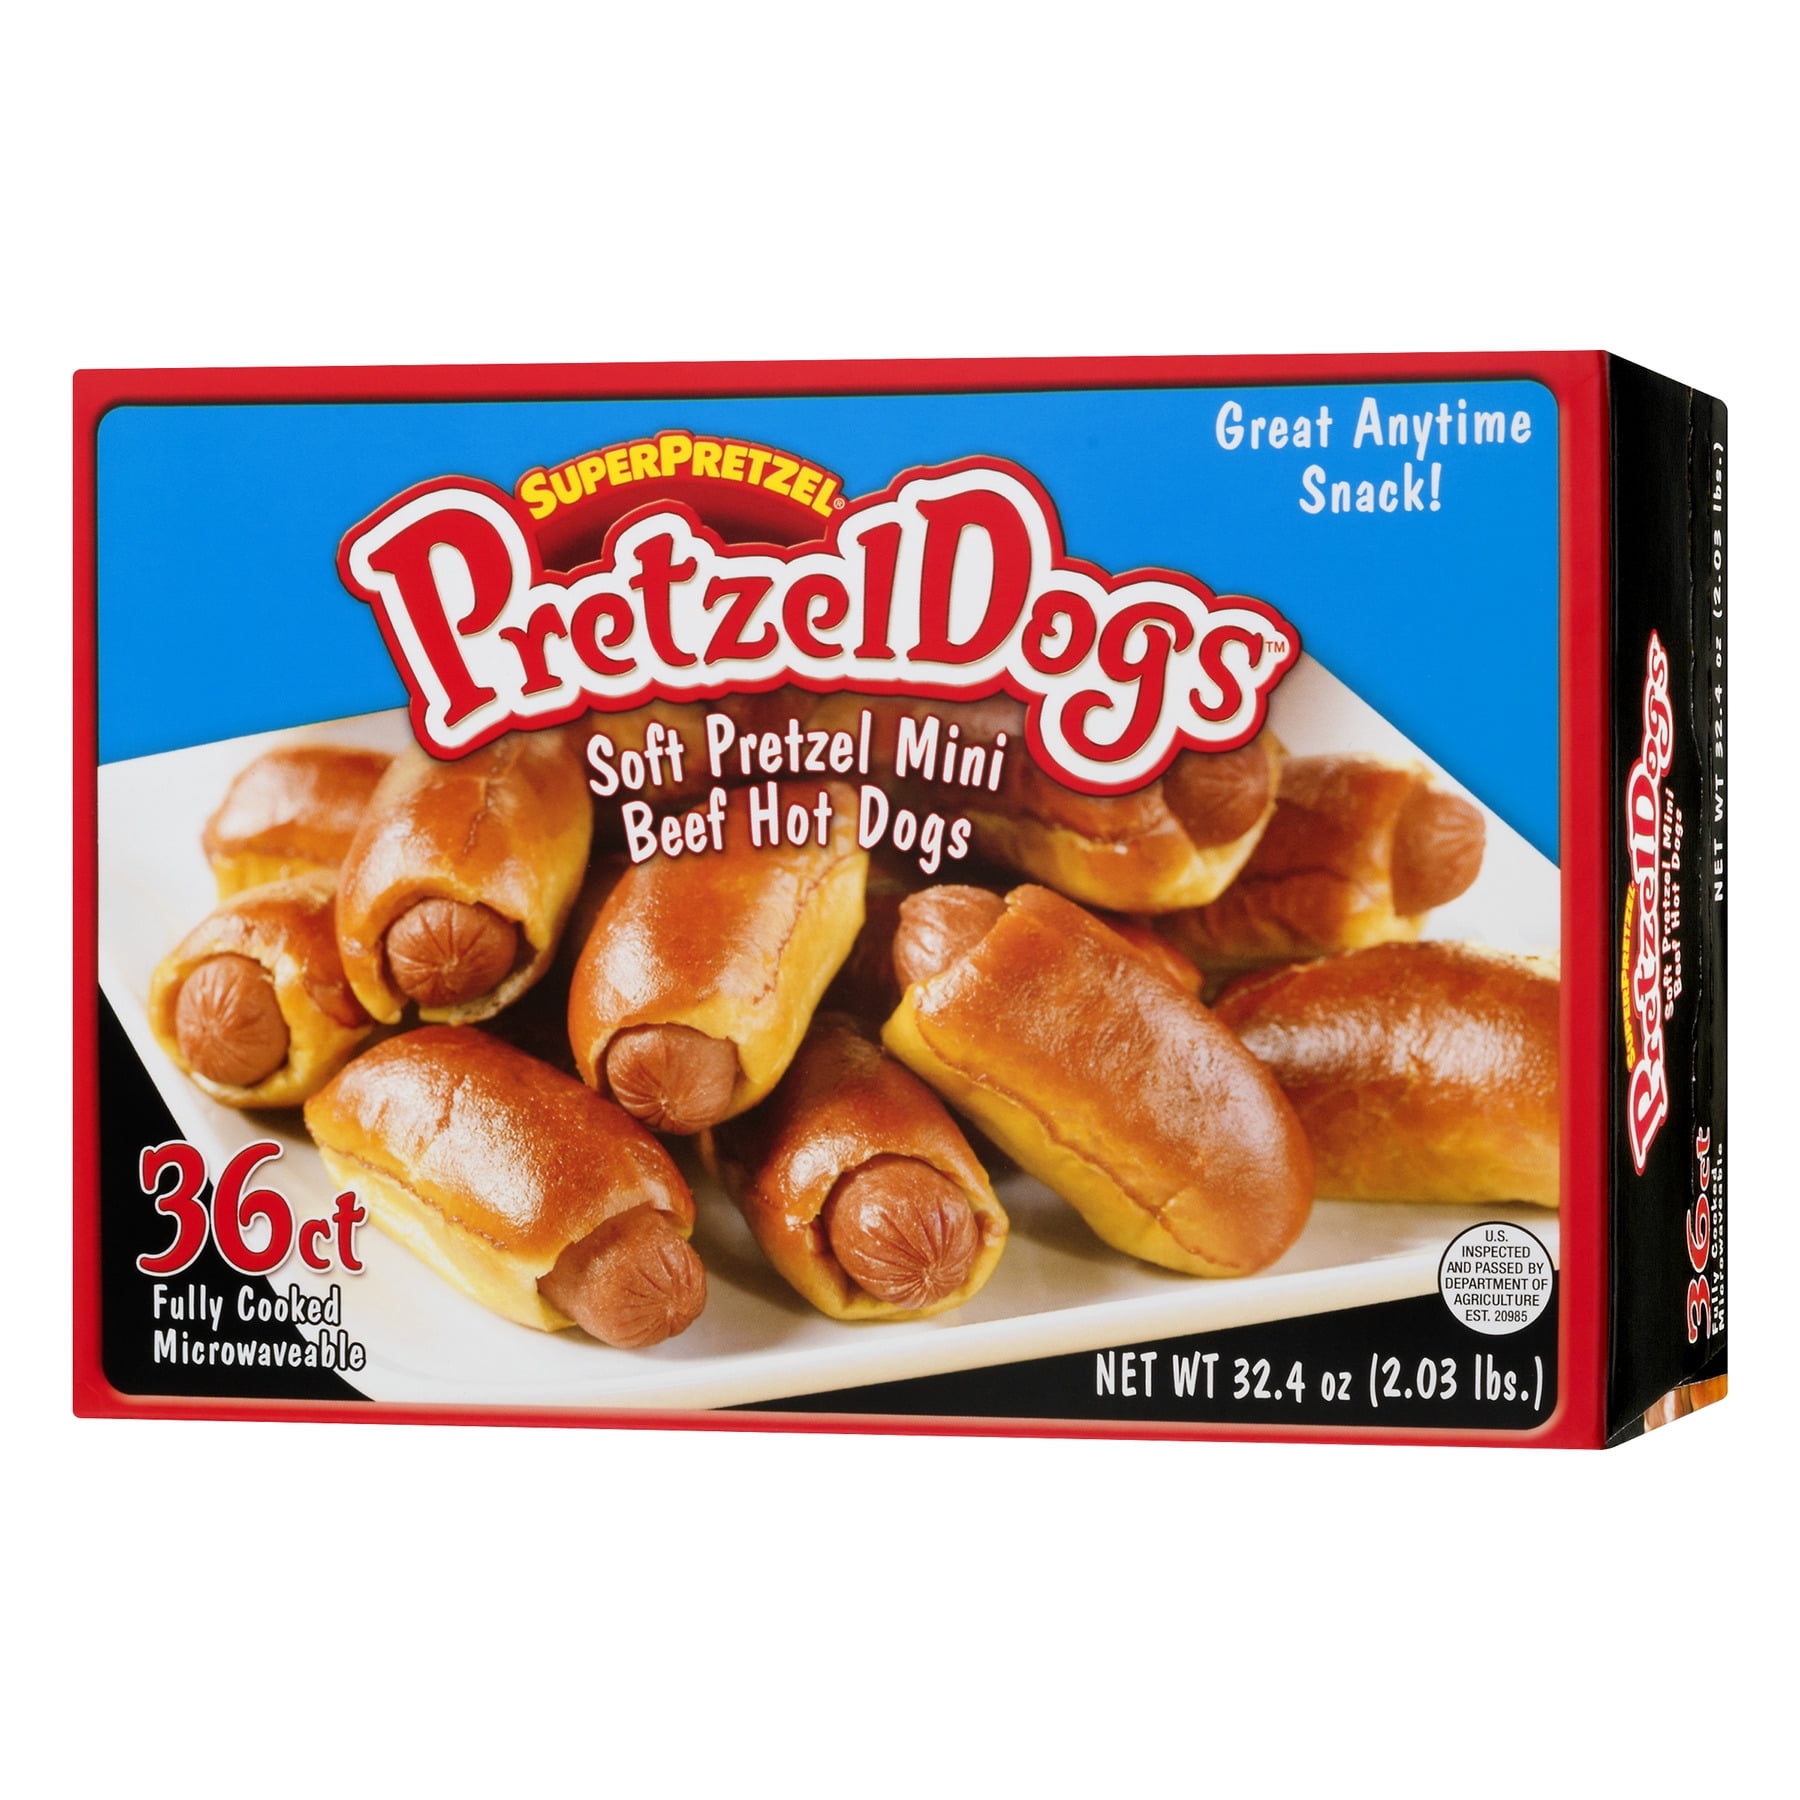 SuperPretzel Pretzel Dogs Soft Pretzel Mini Beef Hot Dogs